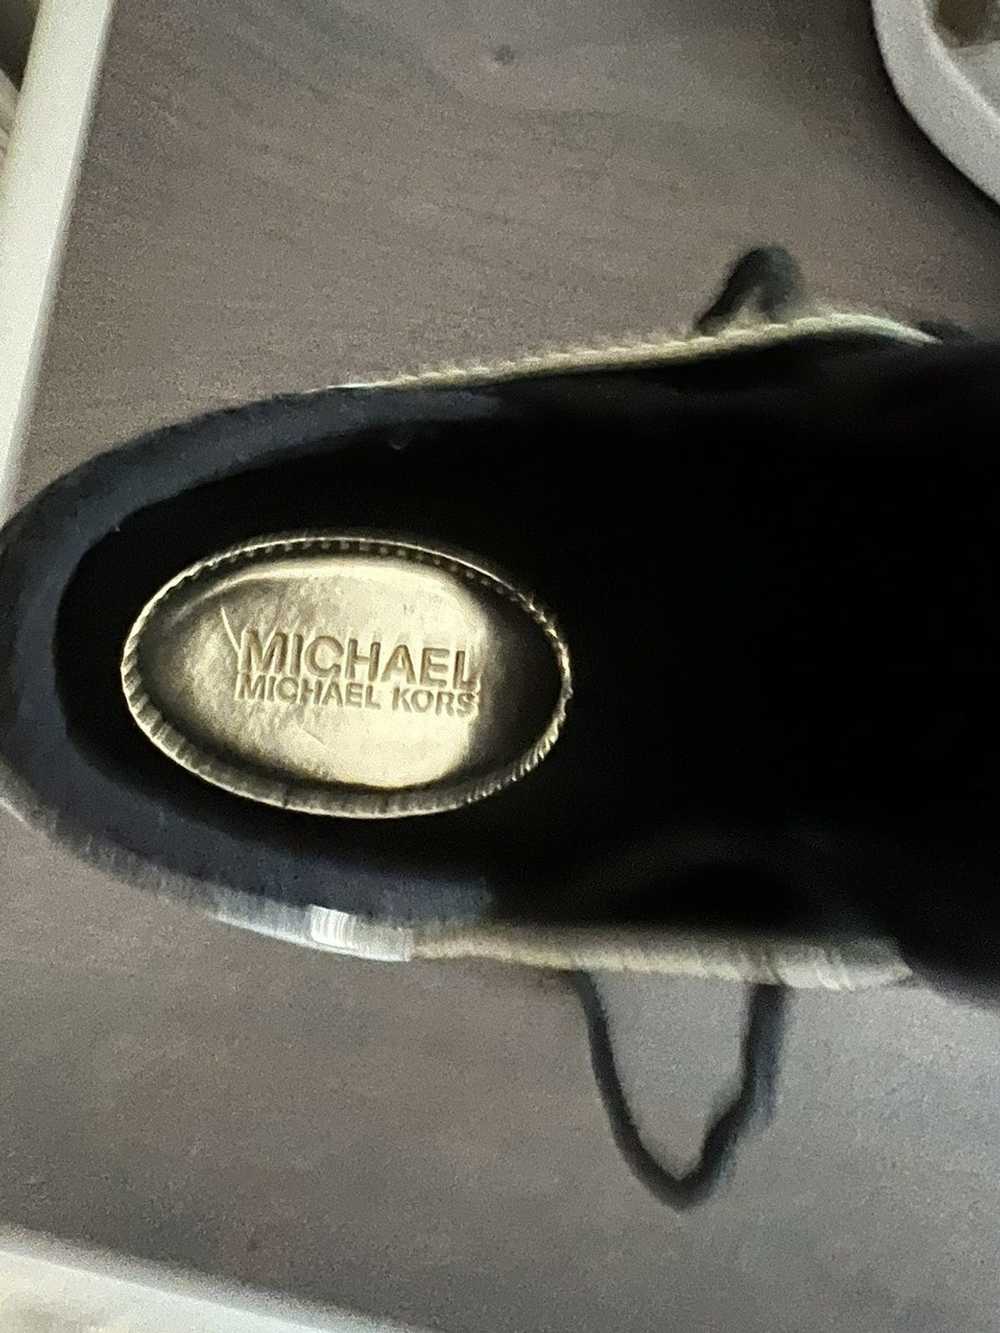 Michael Kors Michael Kors Sneakers - image 3